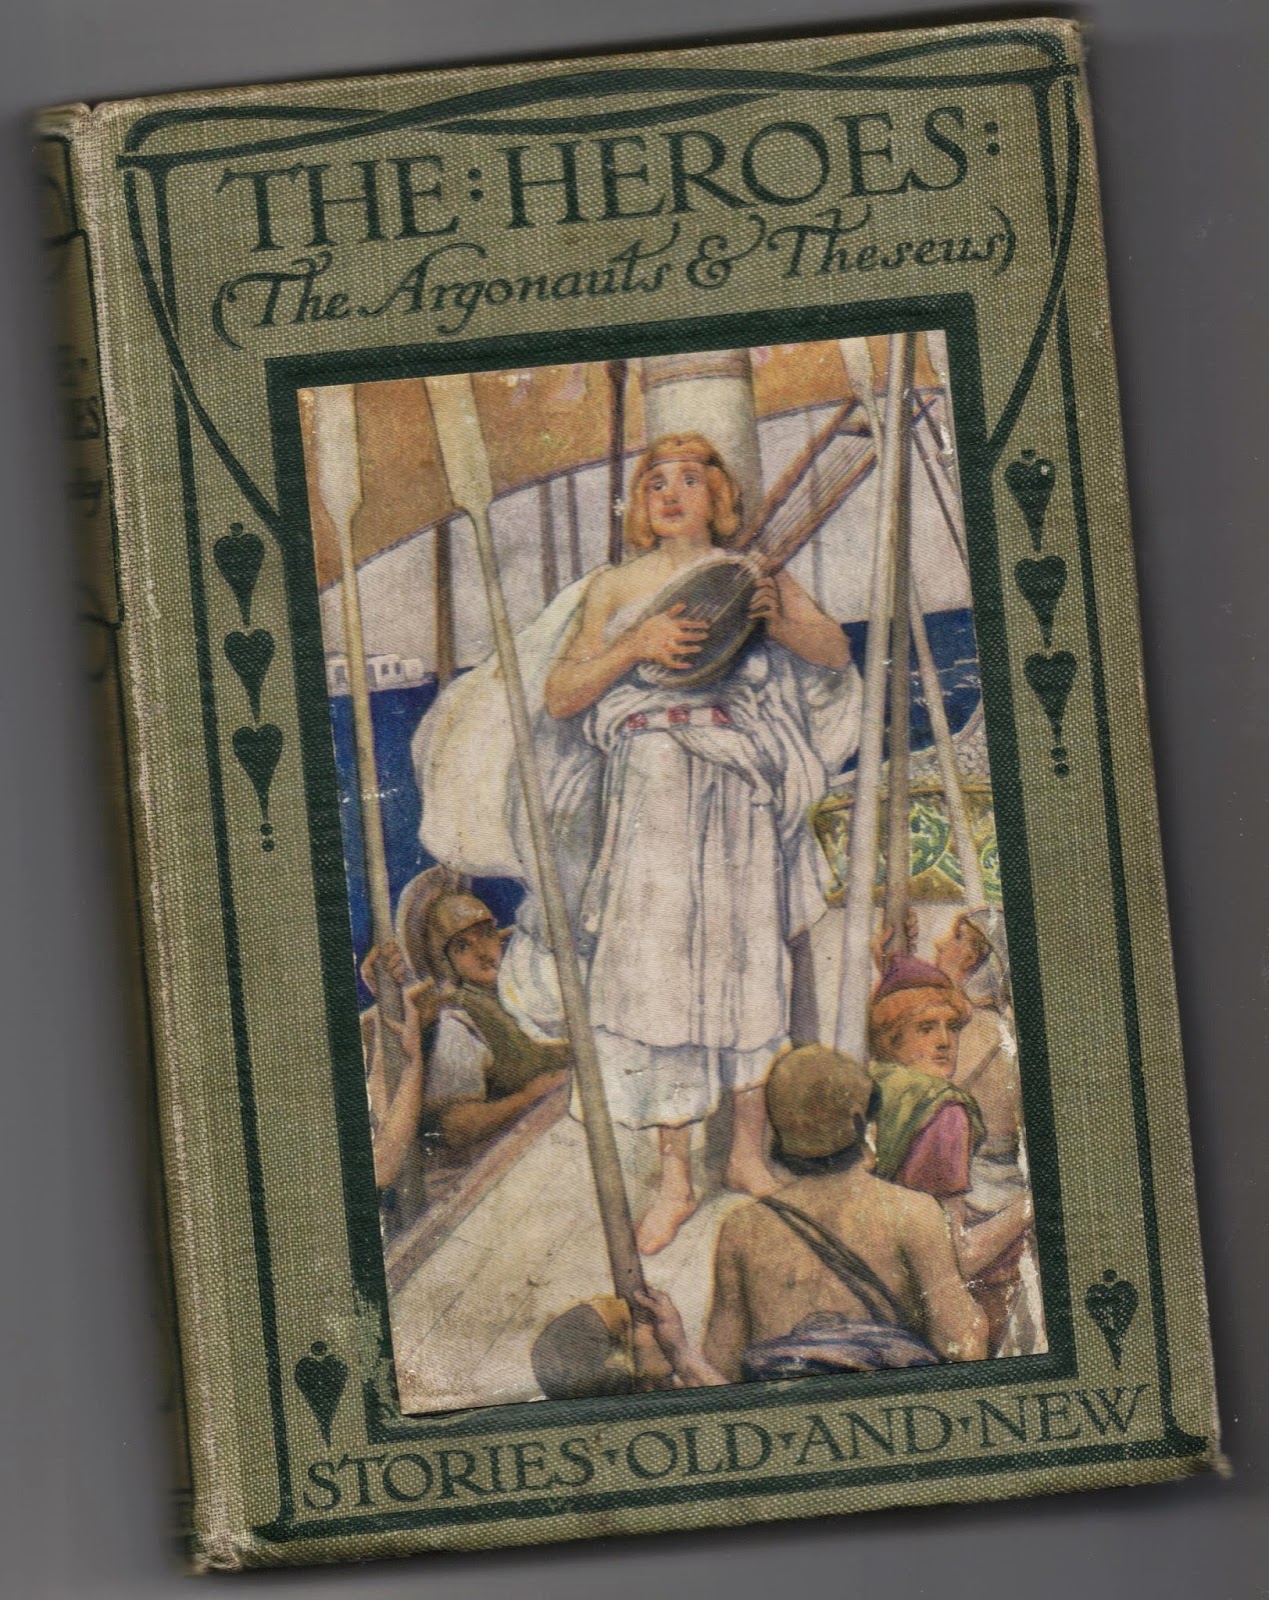 The Heroes -The Argonauts & Theseus